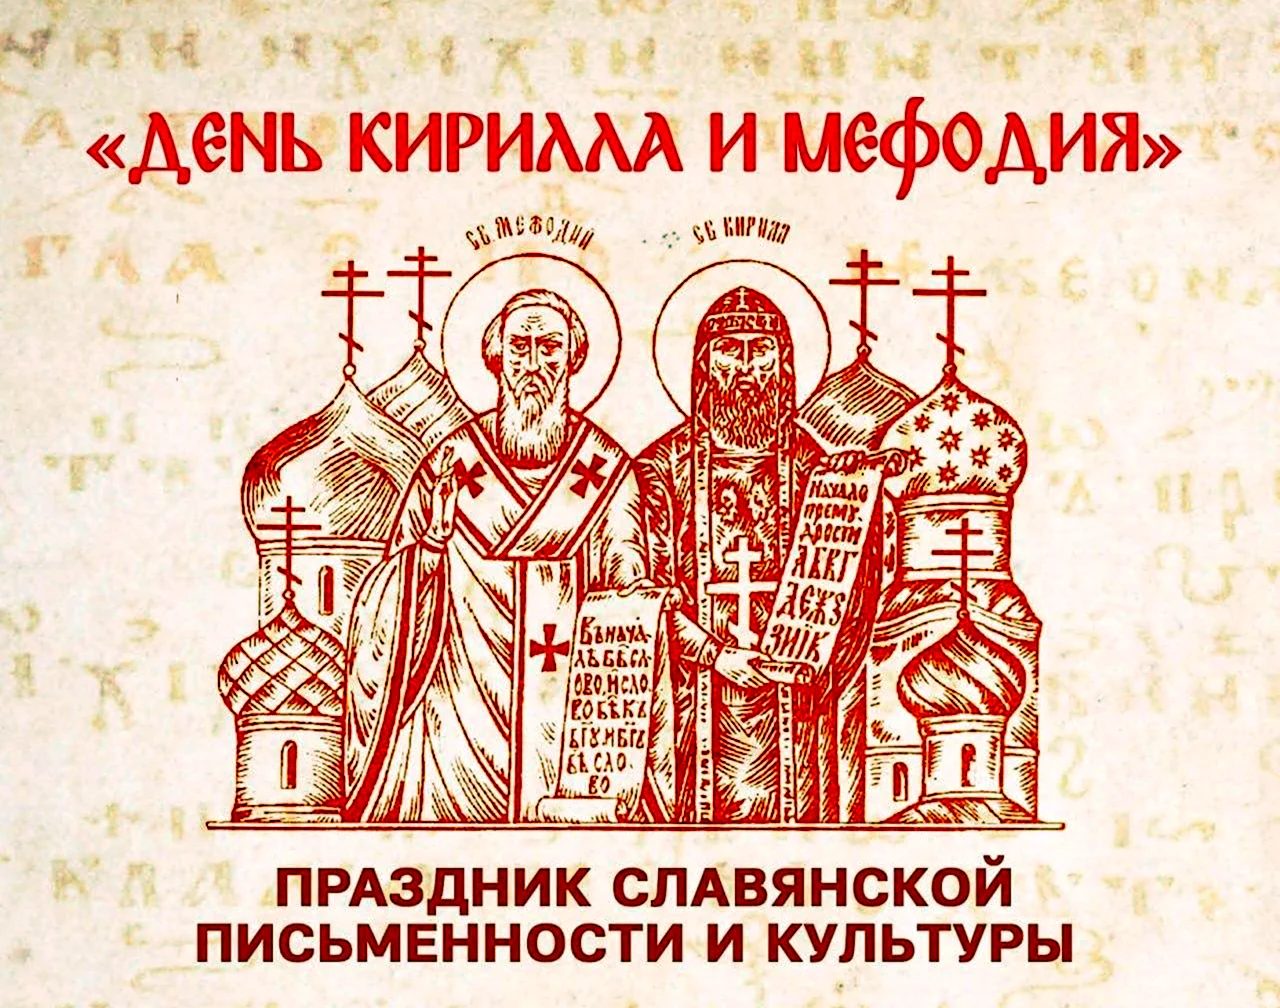 День Кирилла и Мефодия праздник славянской письменности. Поздравление